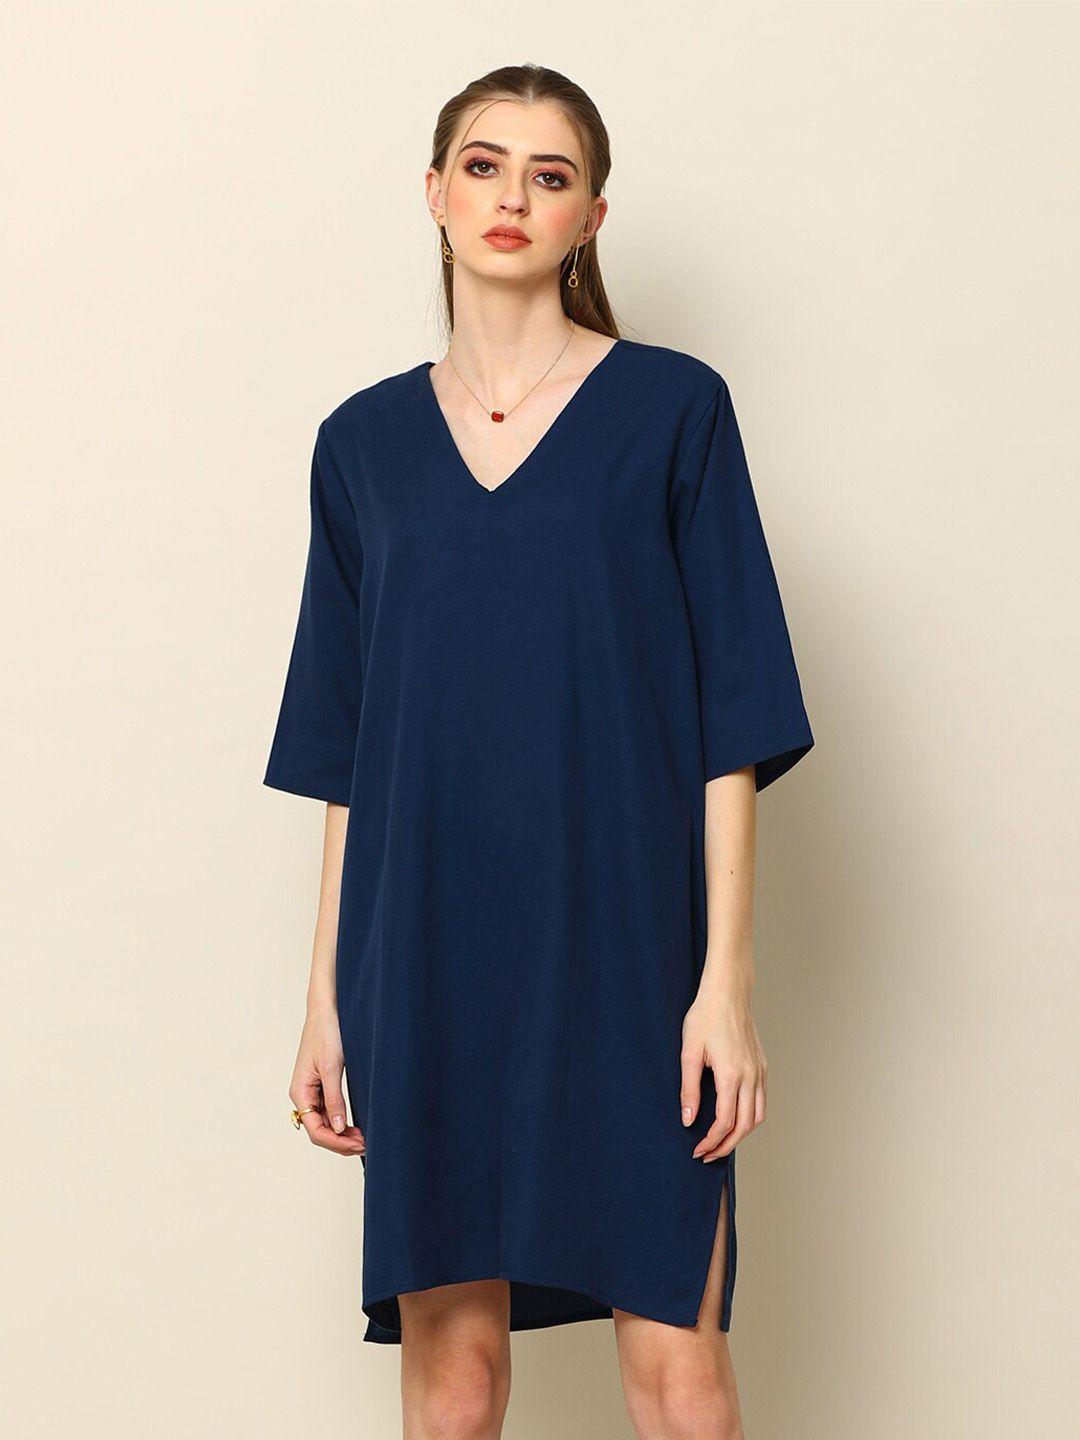 saltpetre navy blue three-quarter sleeves  v neck a-line dress